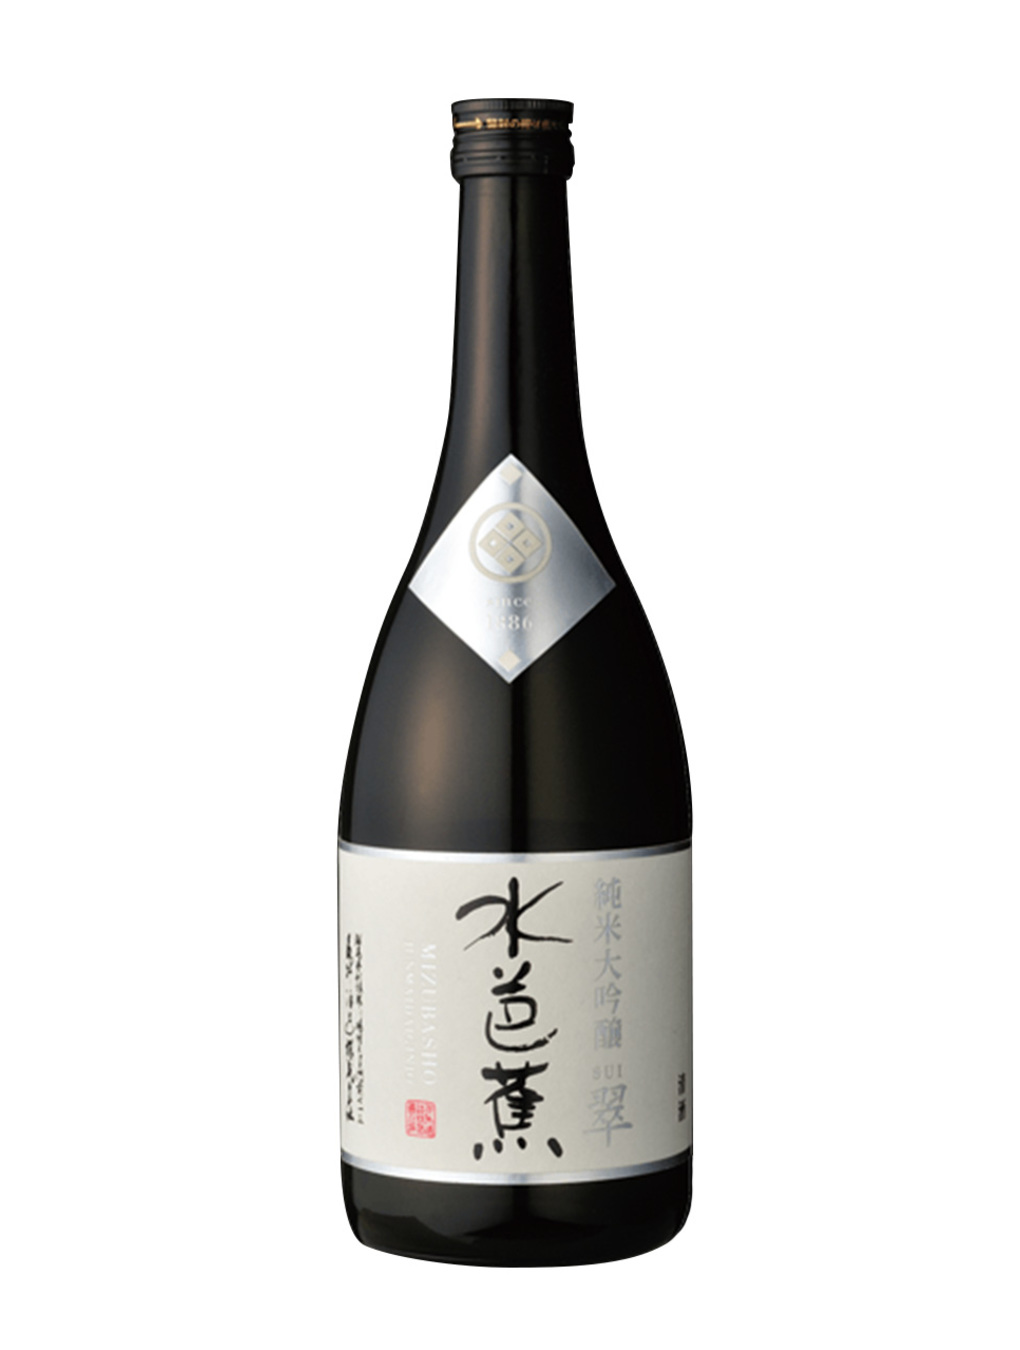 Kurisake 久利酒藏 產品介紹 水芭蕉純米大吟釀翠 水芭蕉